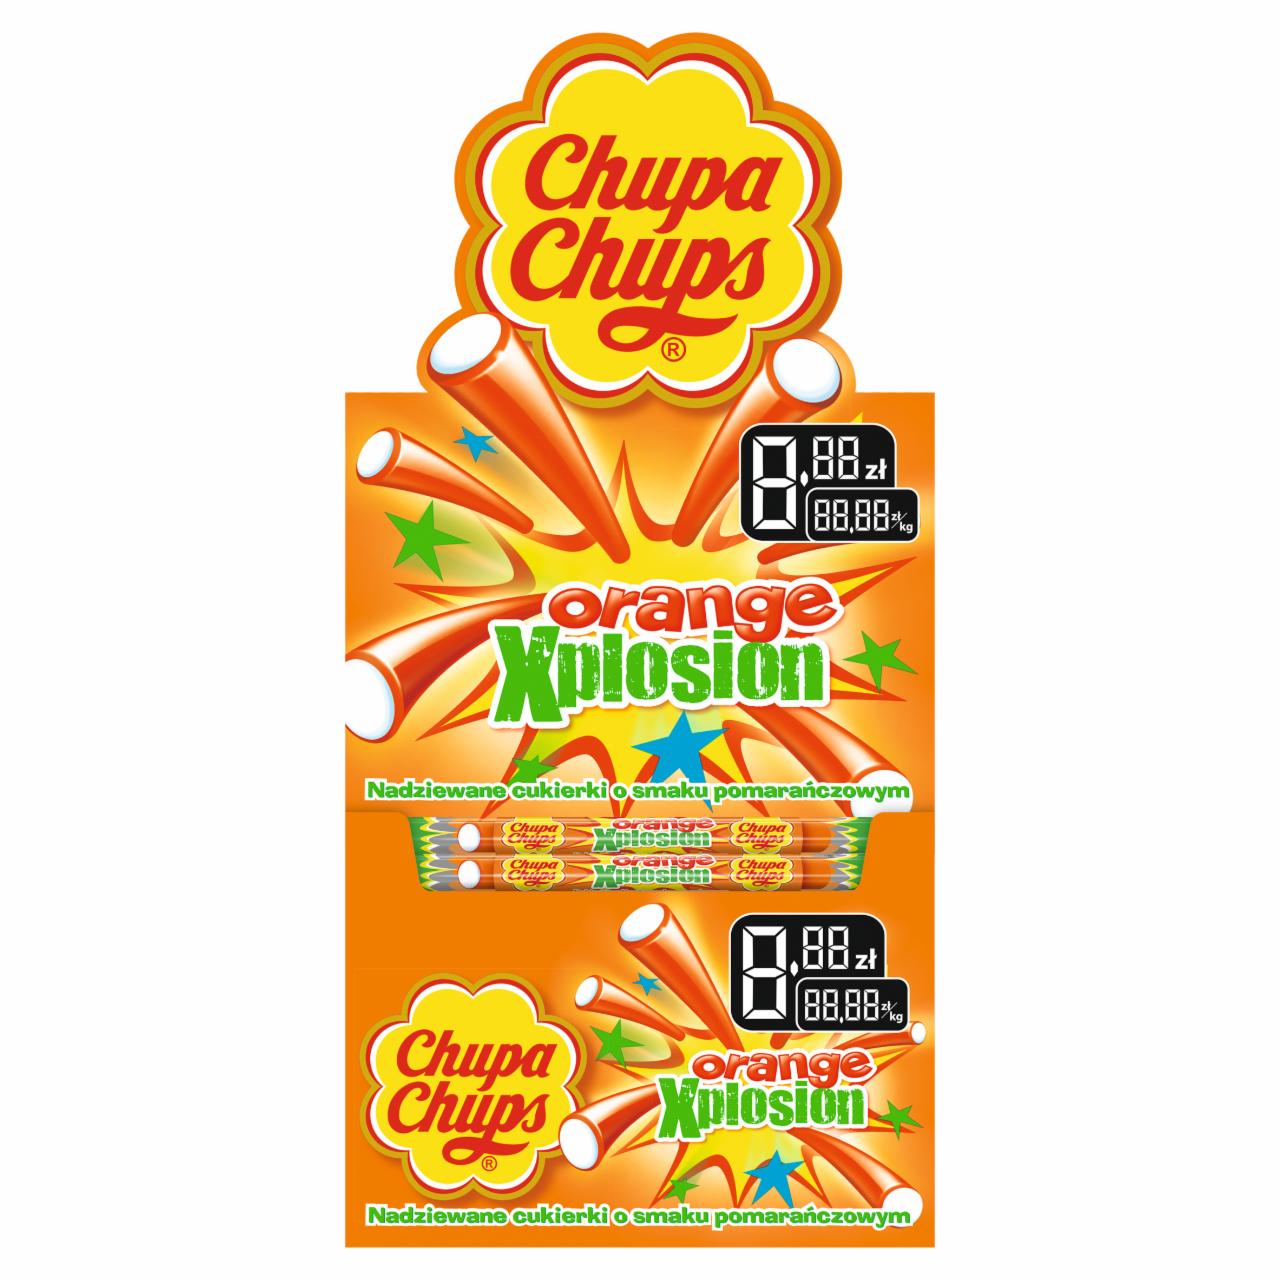 Zdjęcia - Chupa Chups Orange Xplosion Nadziewany cukierek o smaku pomarańczowym 150 x 10 g